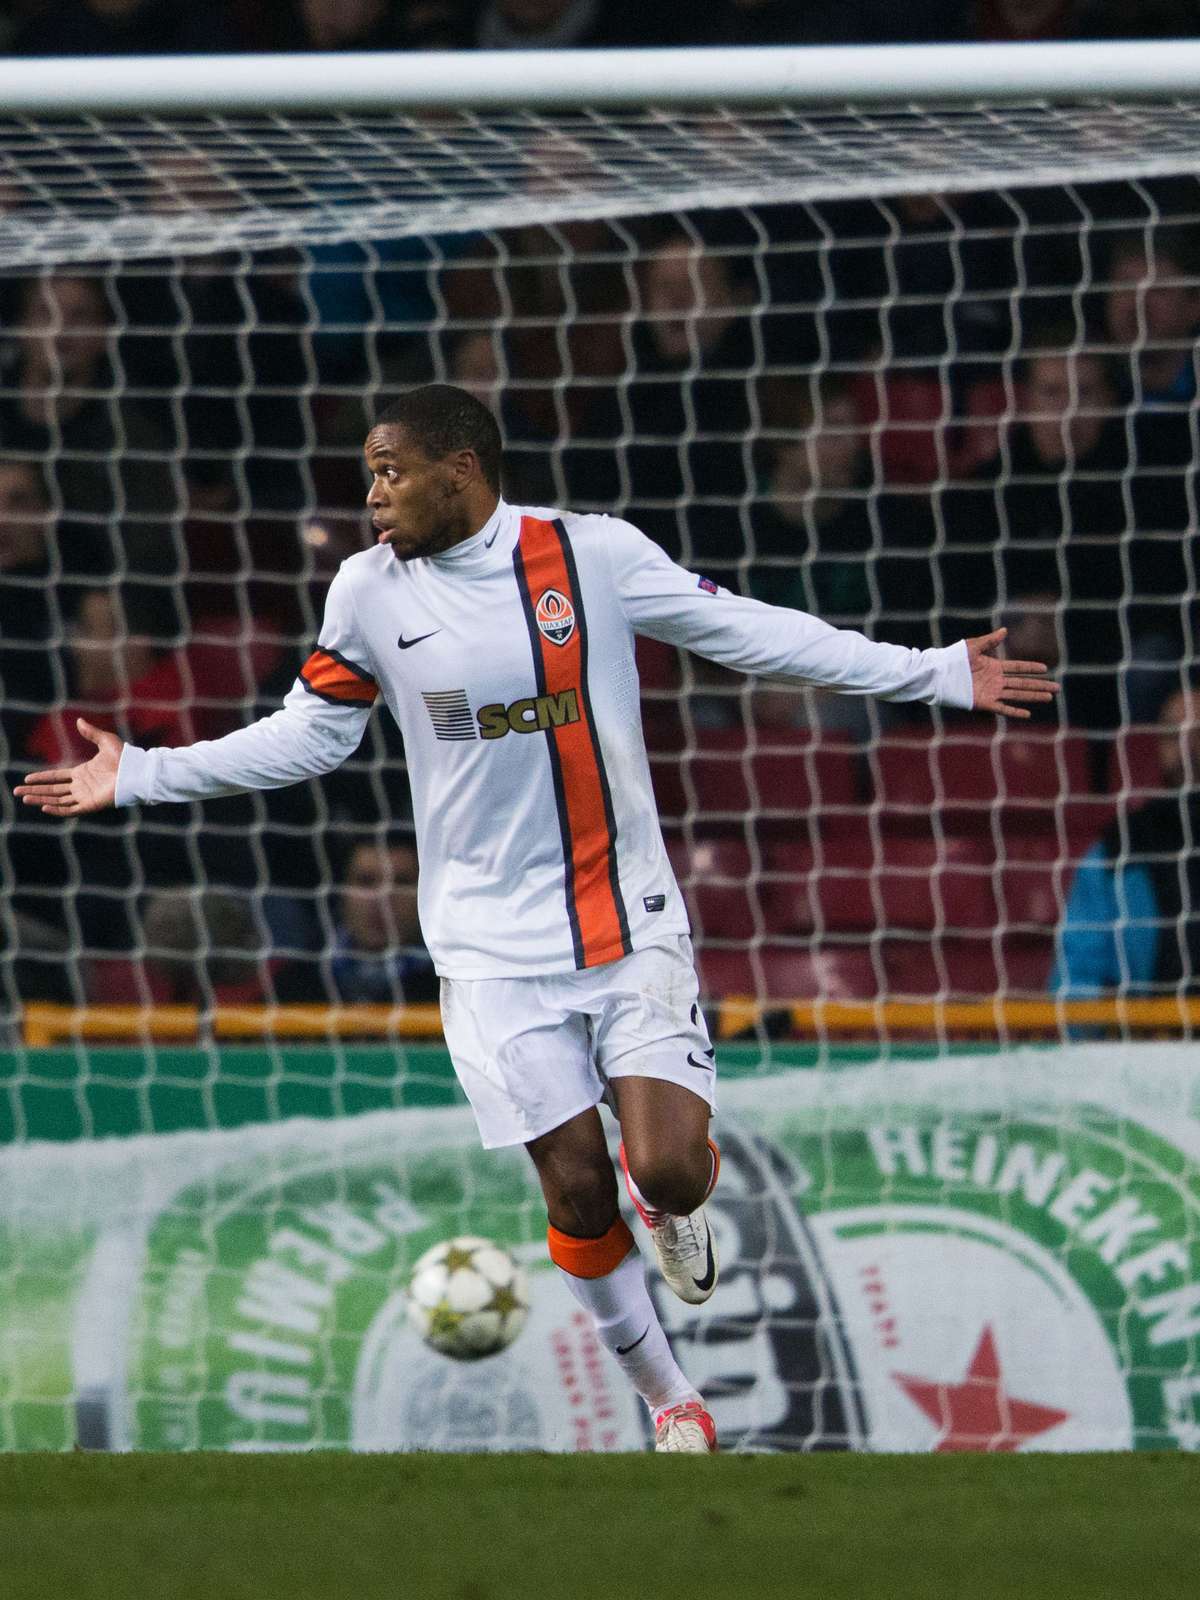 Com dois jogadores expulsos, AZ Alkmaar perde de virada para o FC